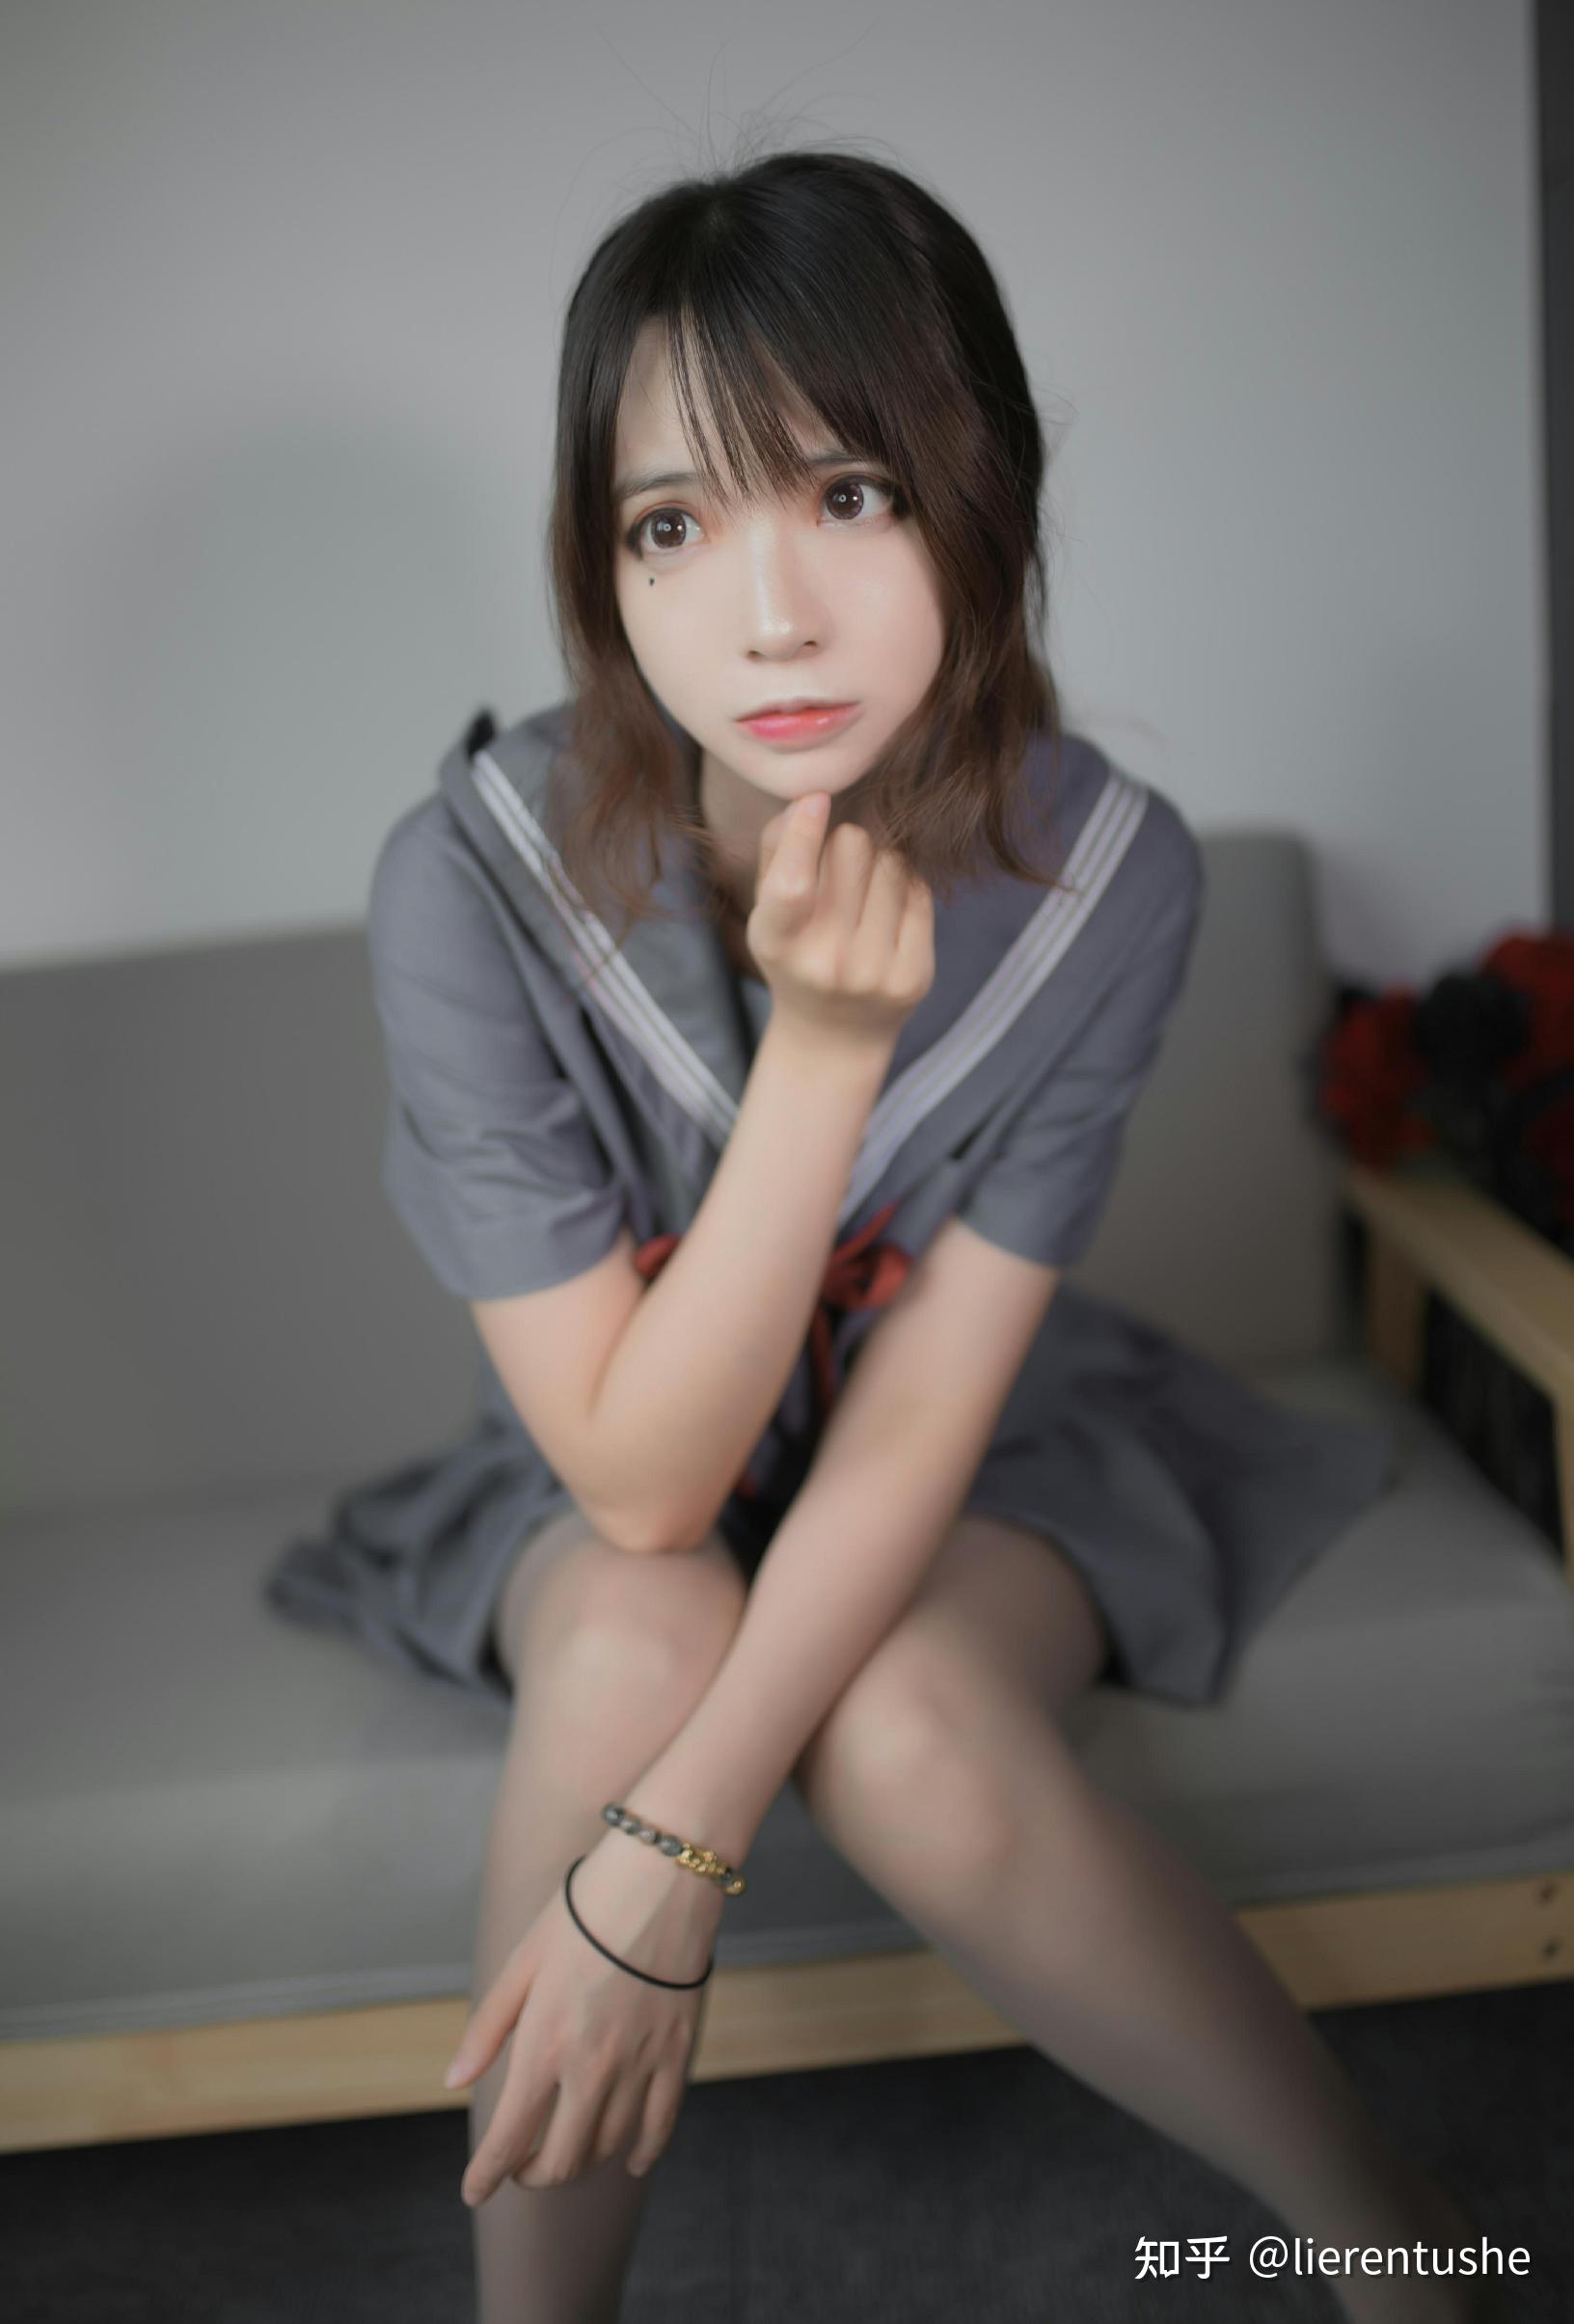 韩国cosplay美女Sol-meng靓丽写真（1）[33P]|MM 写真 - 武当休闲山庄 - 稳定,和谐,人性化的中文社区